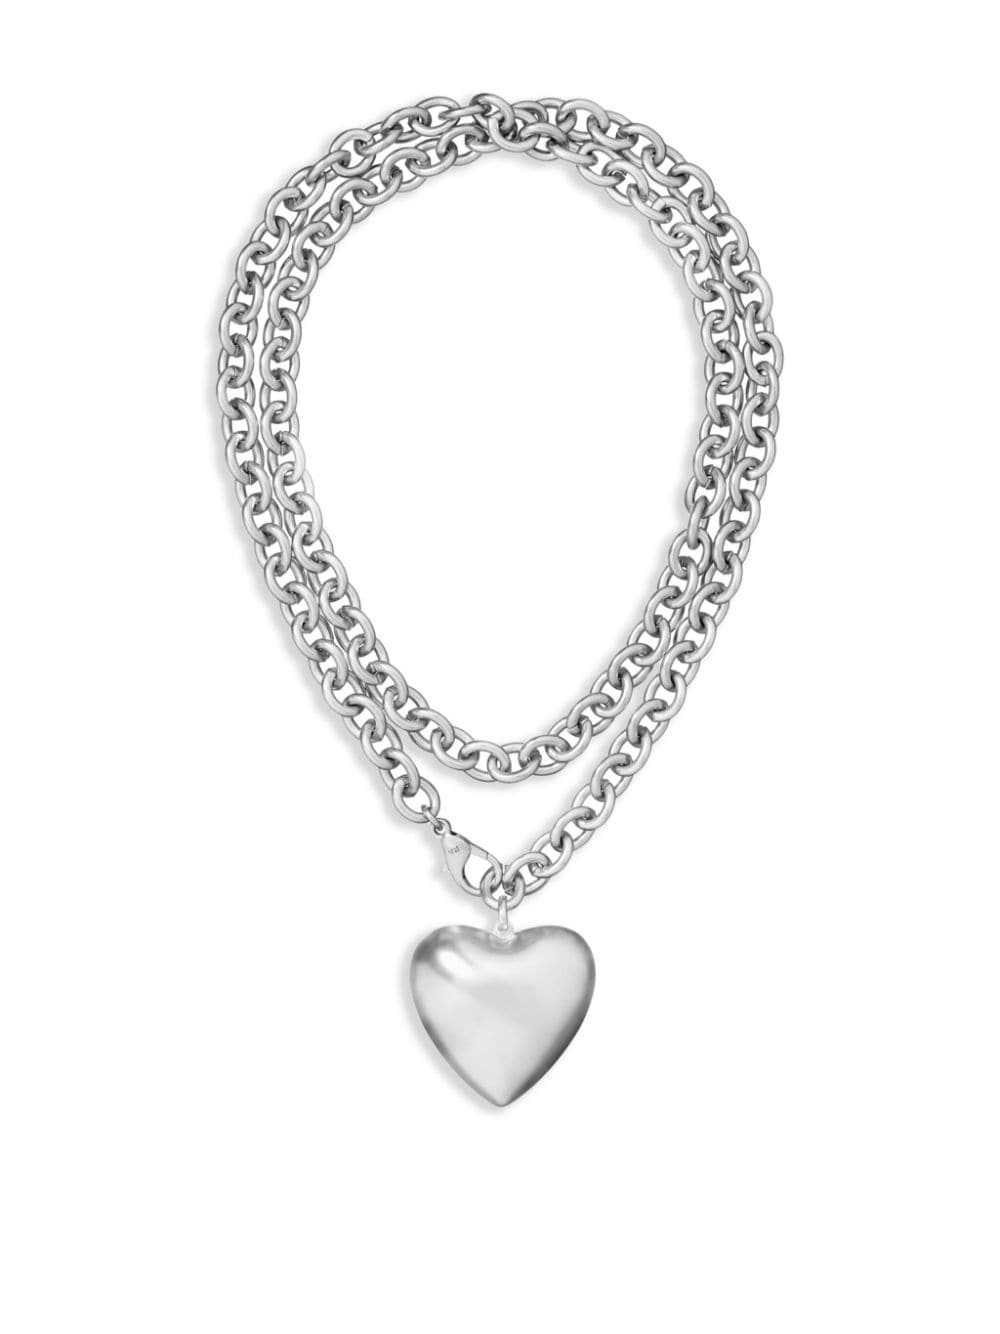 Roxanne Assoulin Big Heart & Soul Necklace In Silver